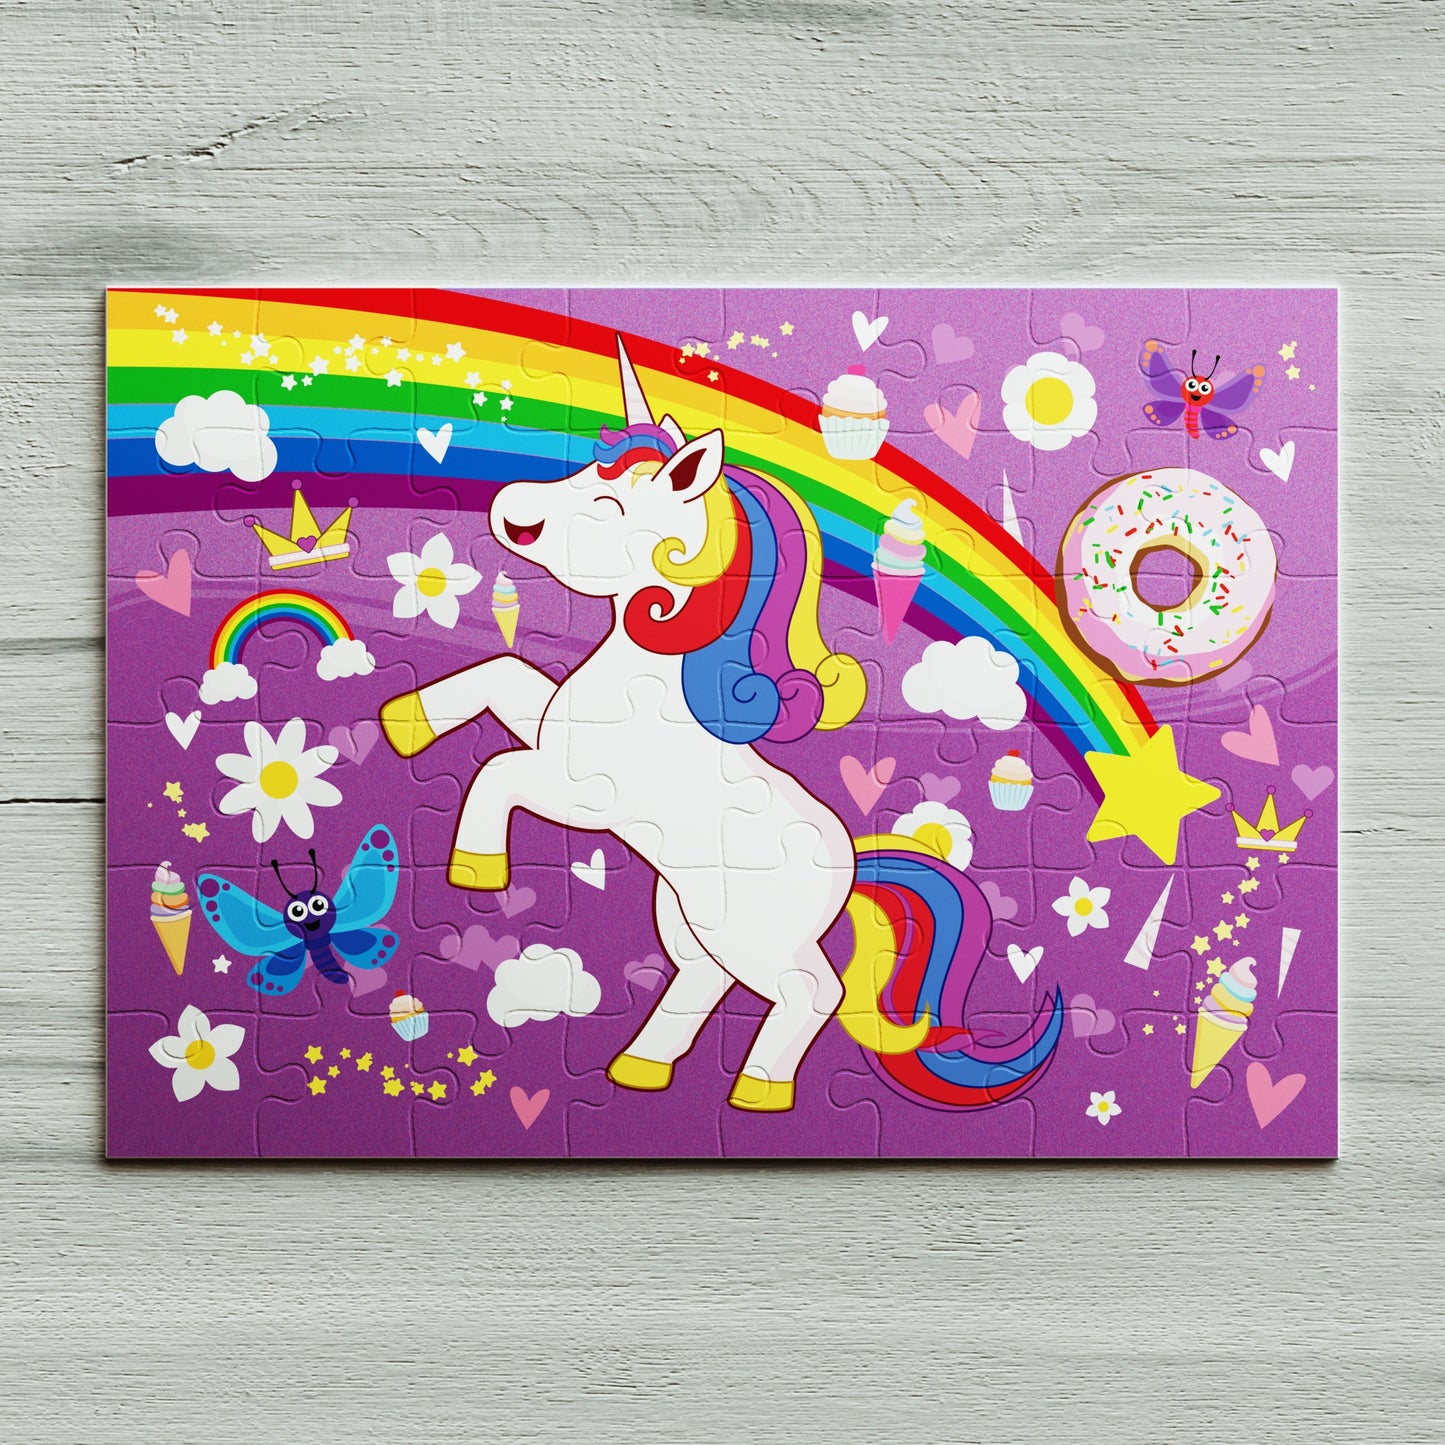 48 piece kids unicorn jigsaw puzzle under rainbow. 